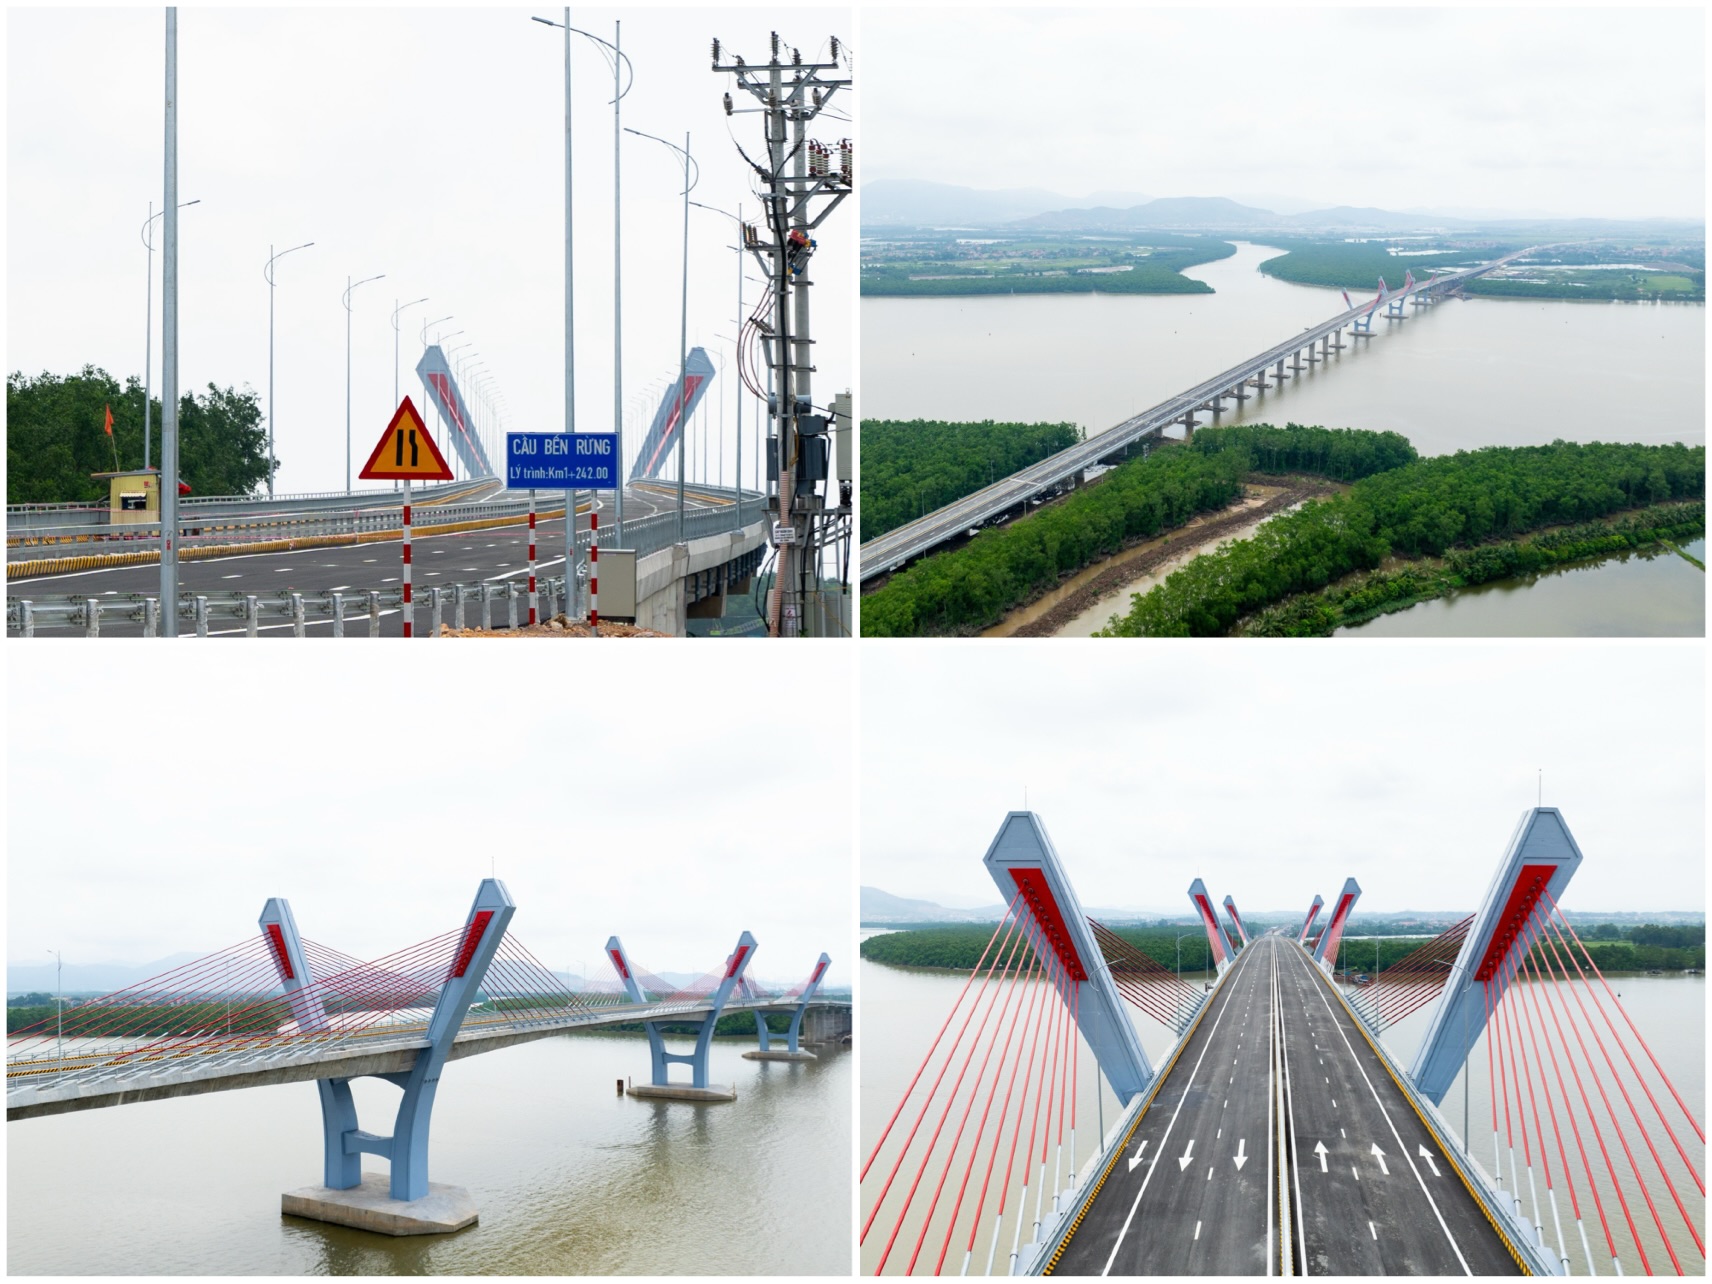 Cầu Bến Rừng nối đôi bờ sông Đá Bạch, nối H.Thủy Nguyên (Hải Phòng) và TX.Quảng Yên (Quảng Ninh)